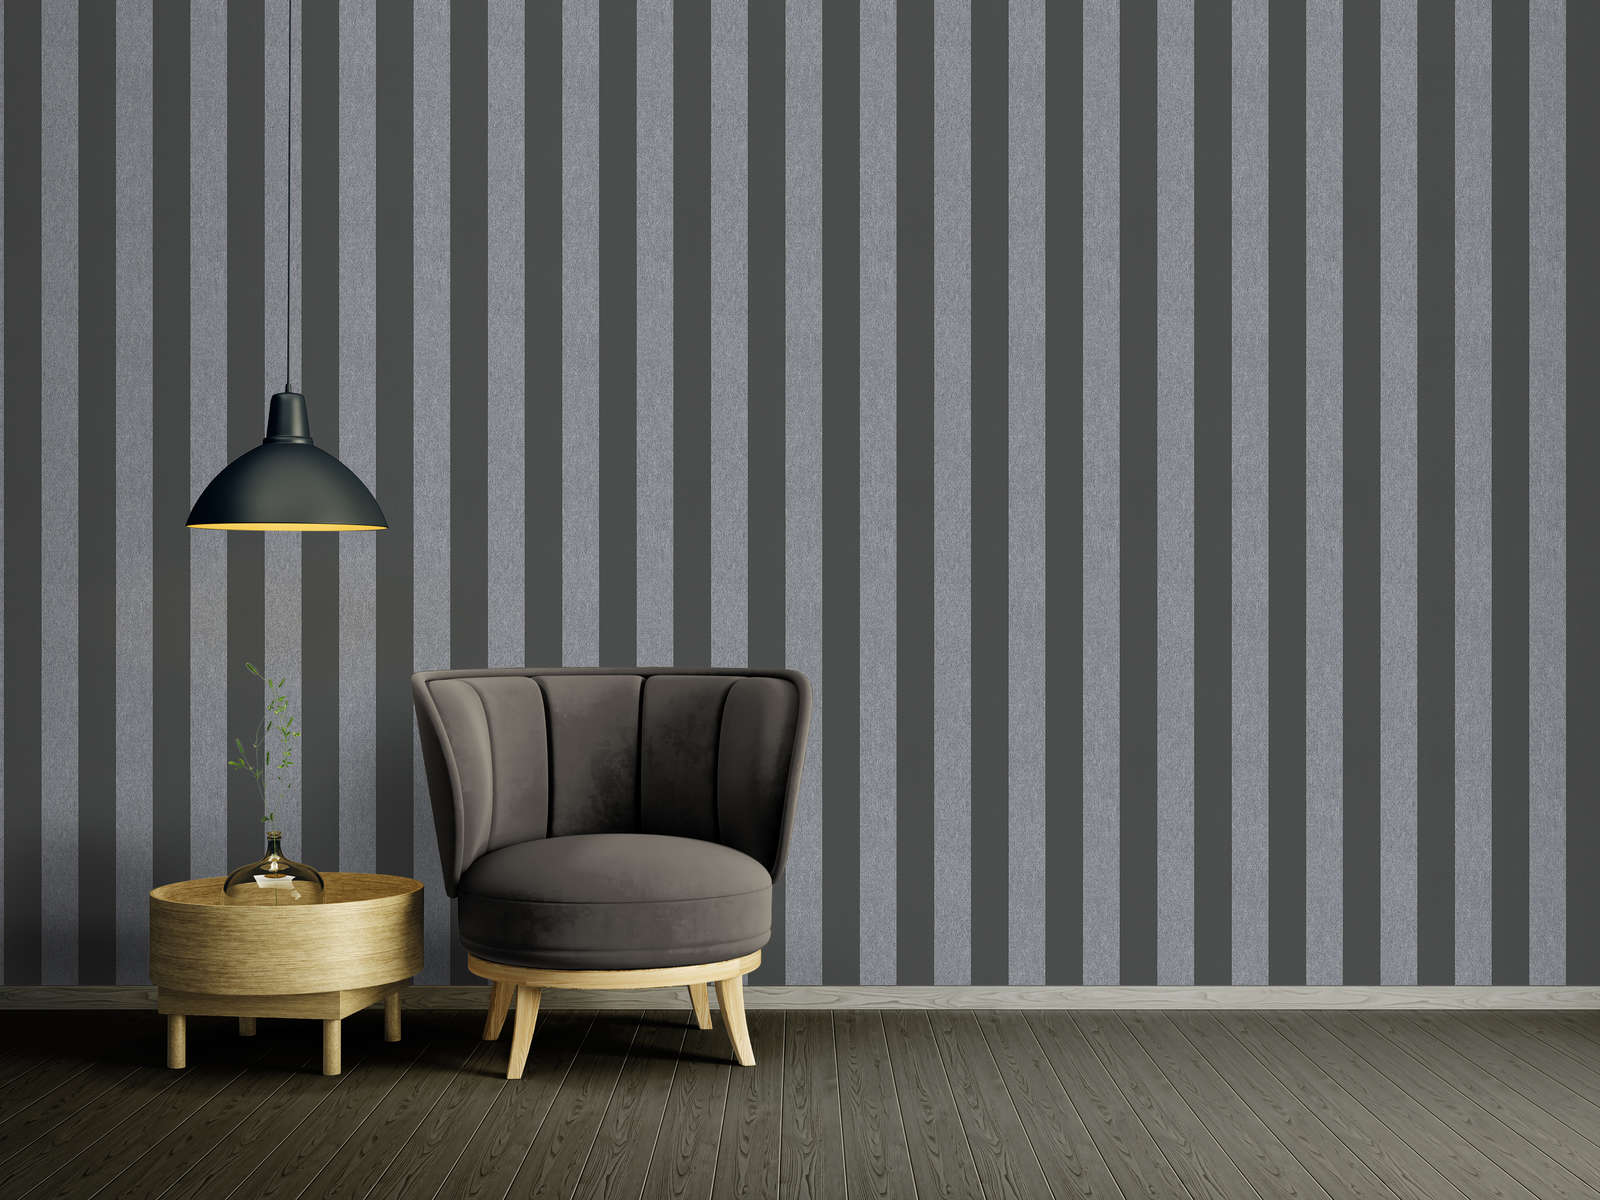             Rayures papier peint intissé aspect structuré mat - noir, gris
        